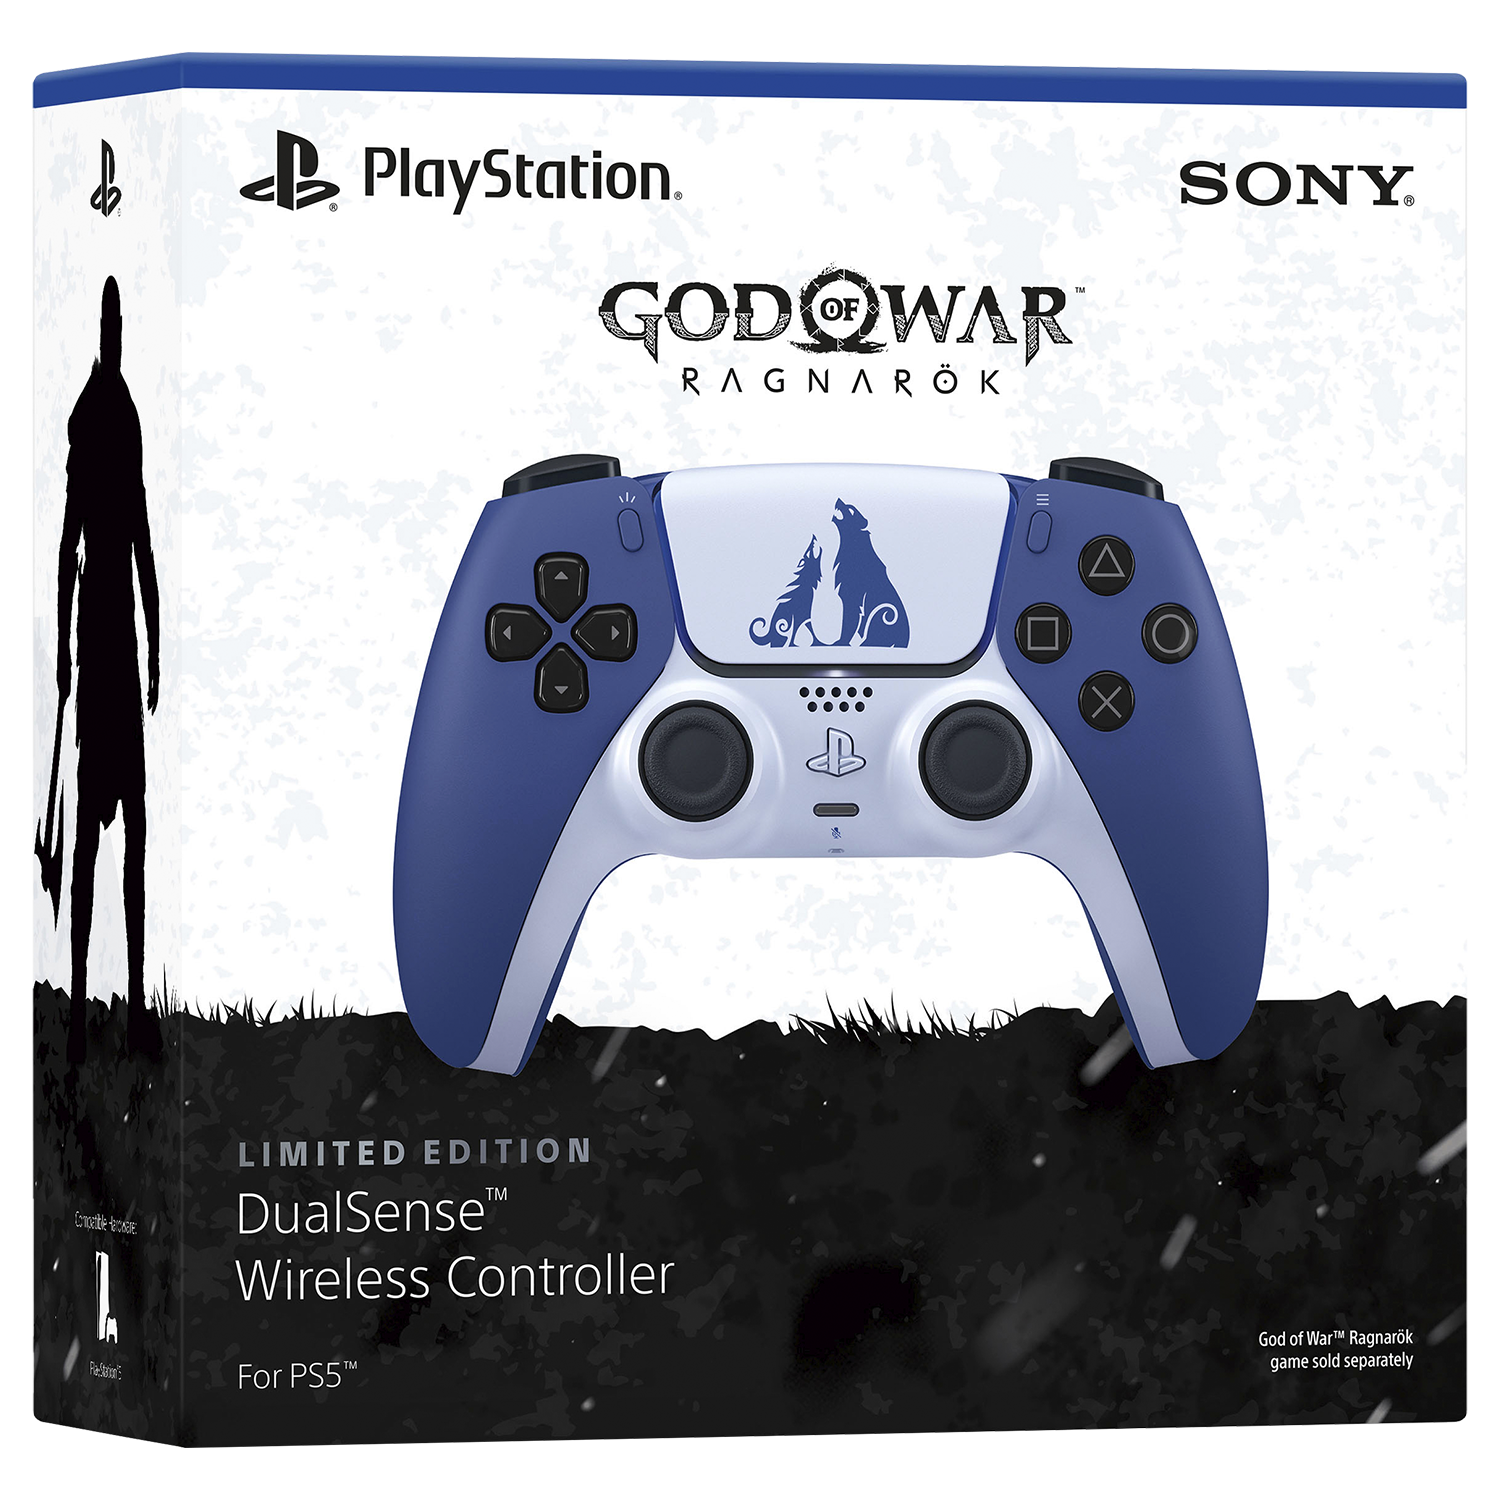 Porta Jogos para Ps4 Ps3 Xbox One Blu Ray God of War em Promoção